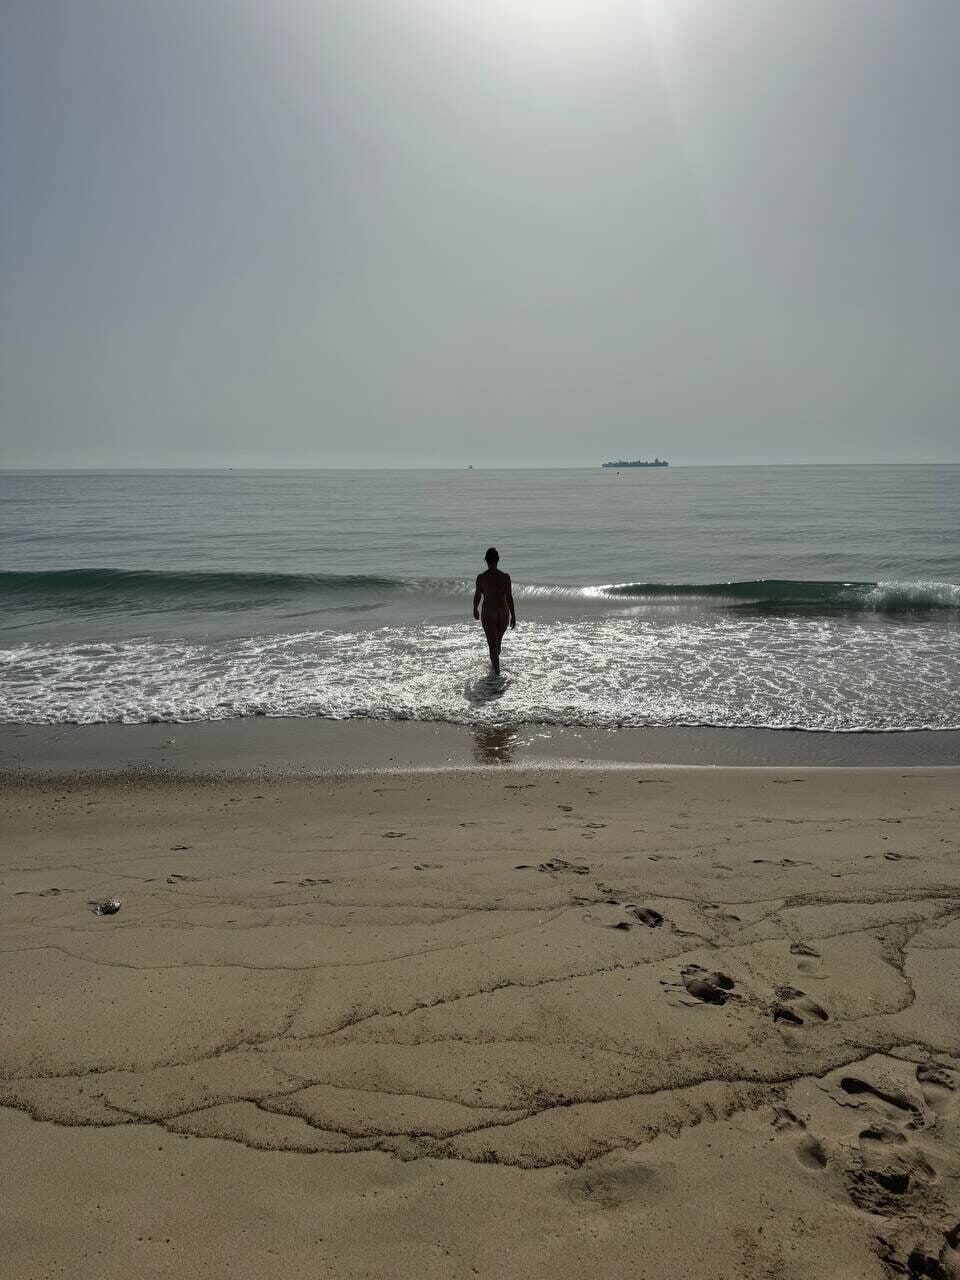 My wife on the beach